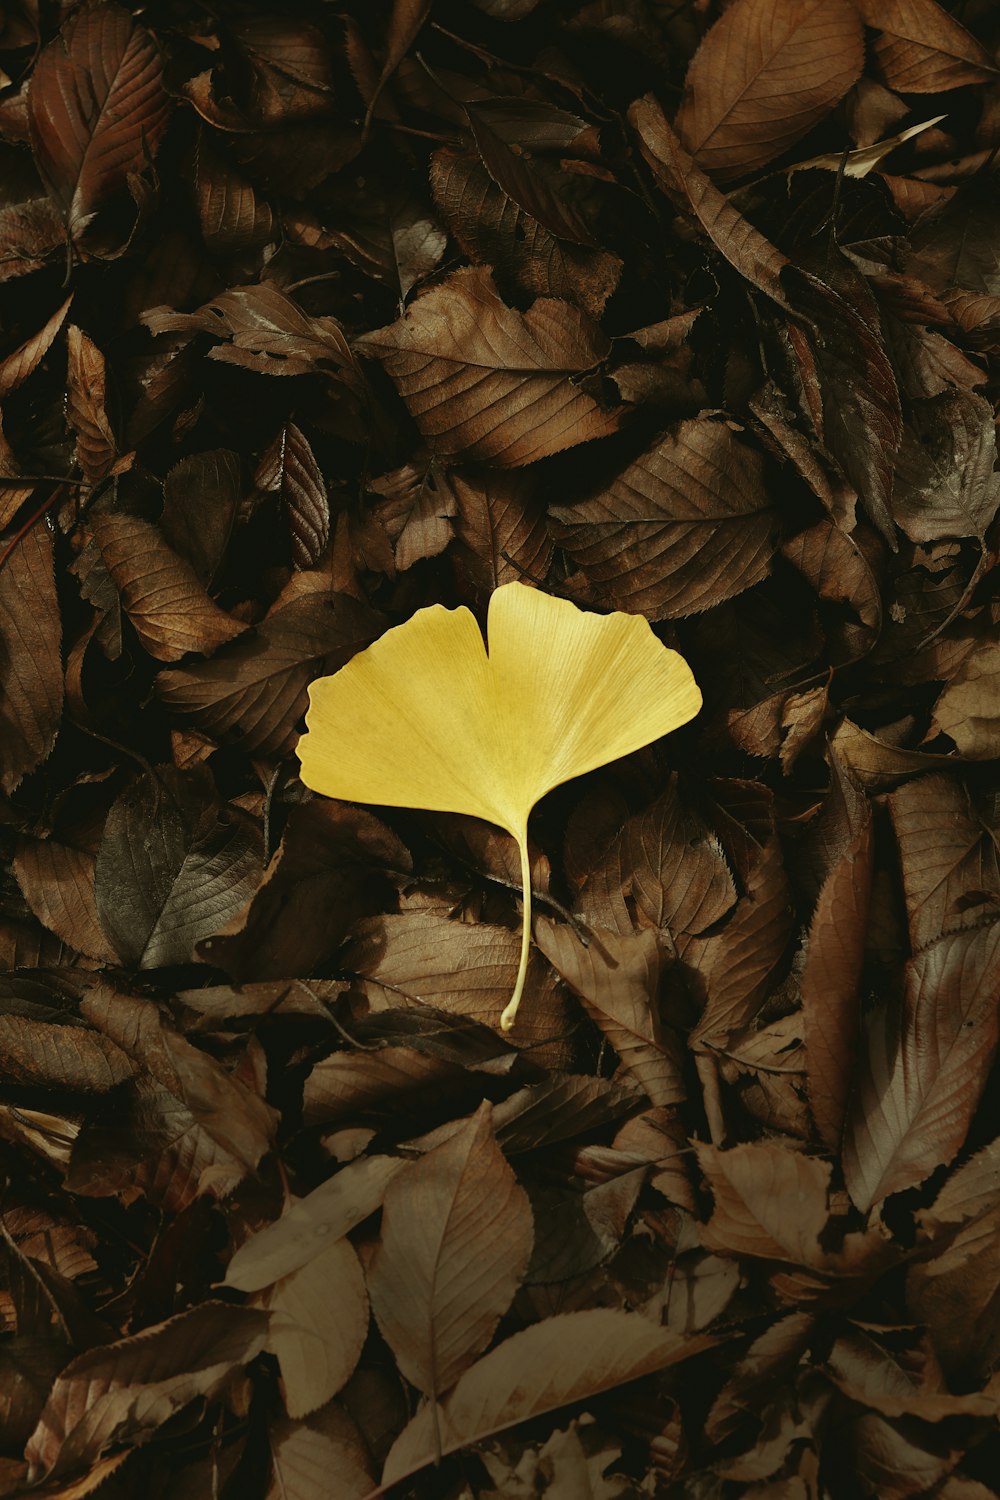 갈색 잎에 노란 잎